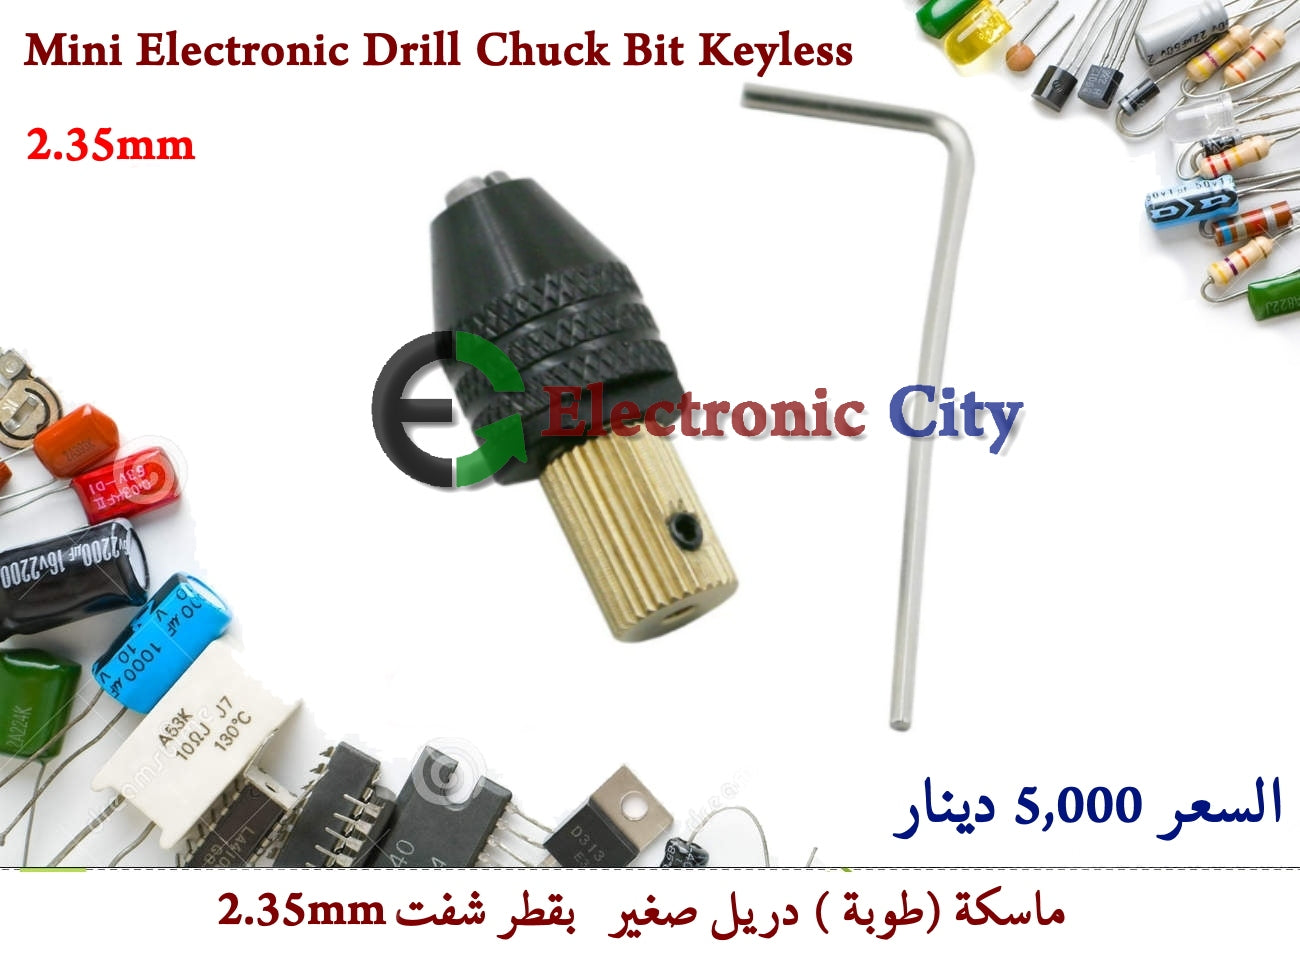 Mini Electronic Drill Chuck Bit Keyless 2.35mm #B5 011220